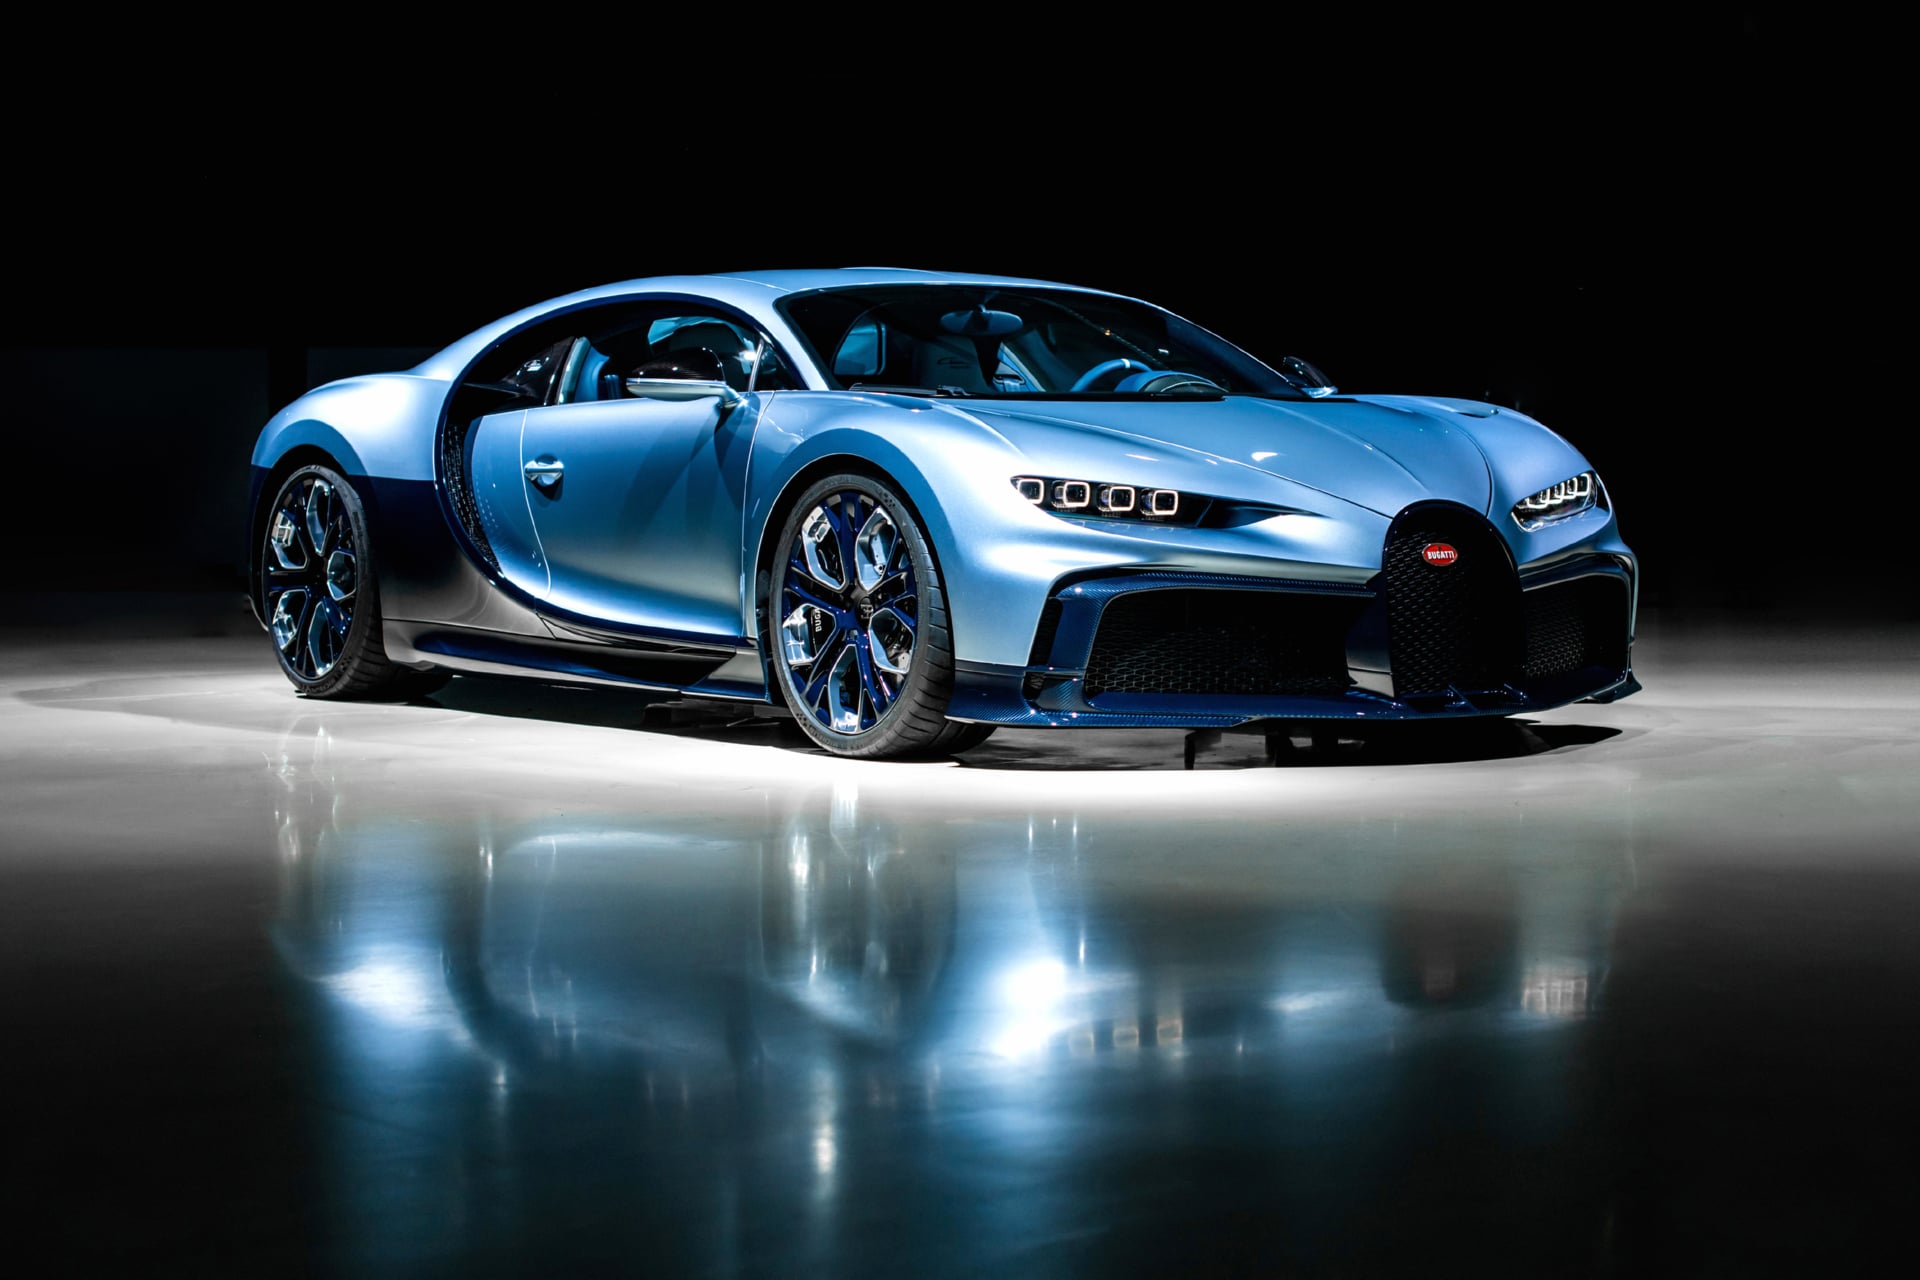 Bugatti Chiron Profilee at 1280 x 960 size wallpapers HD quality